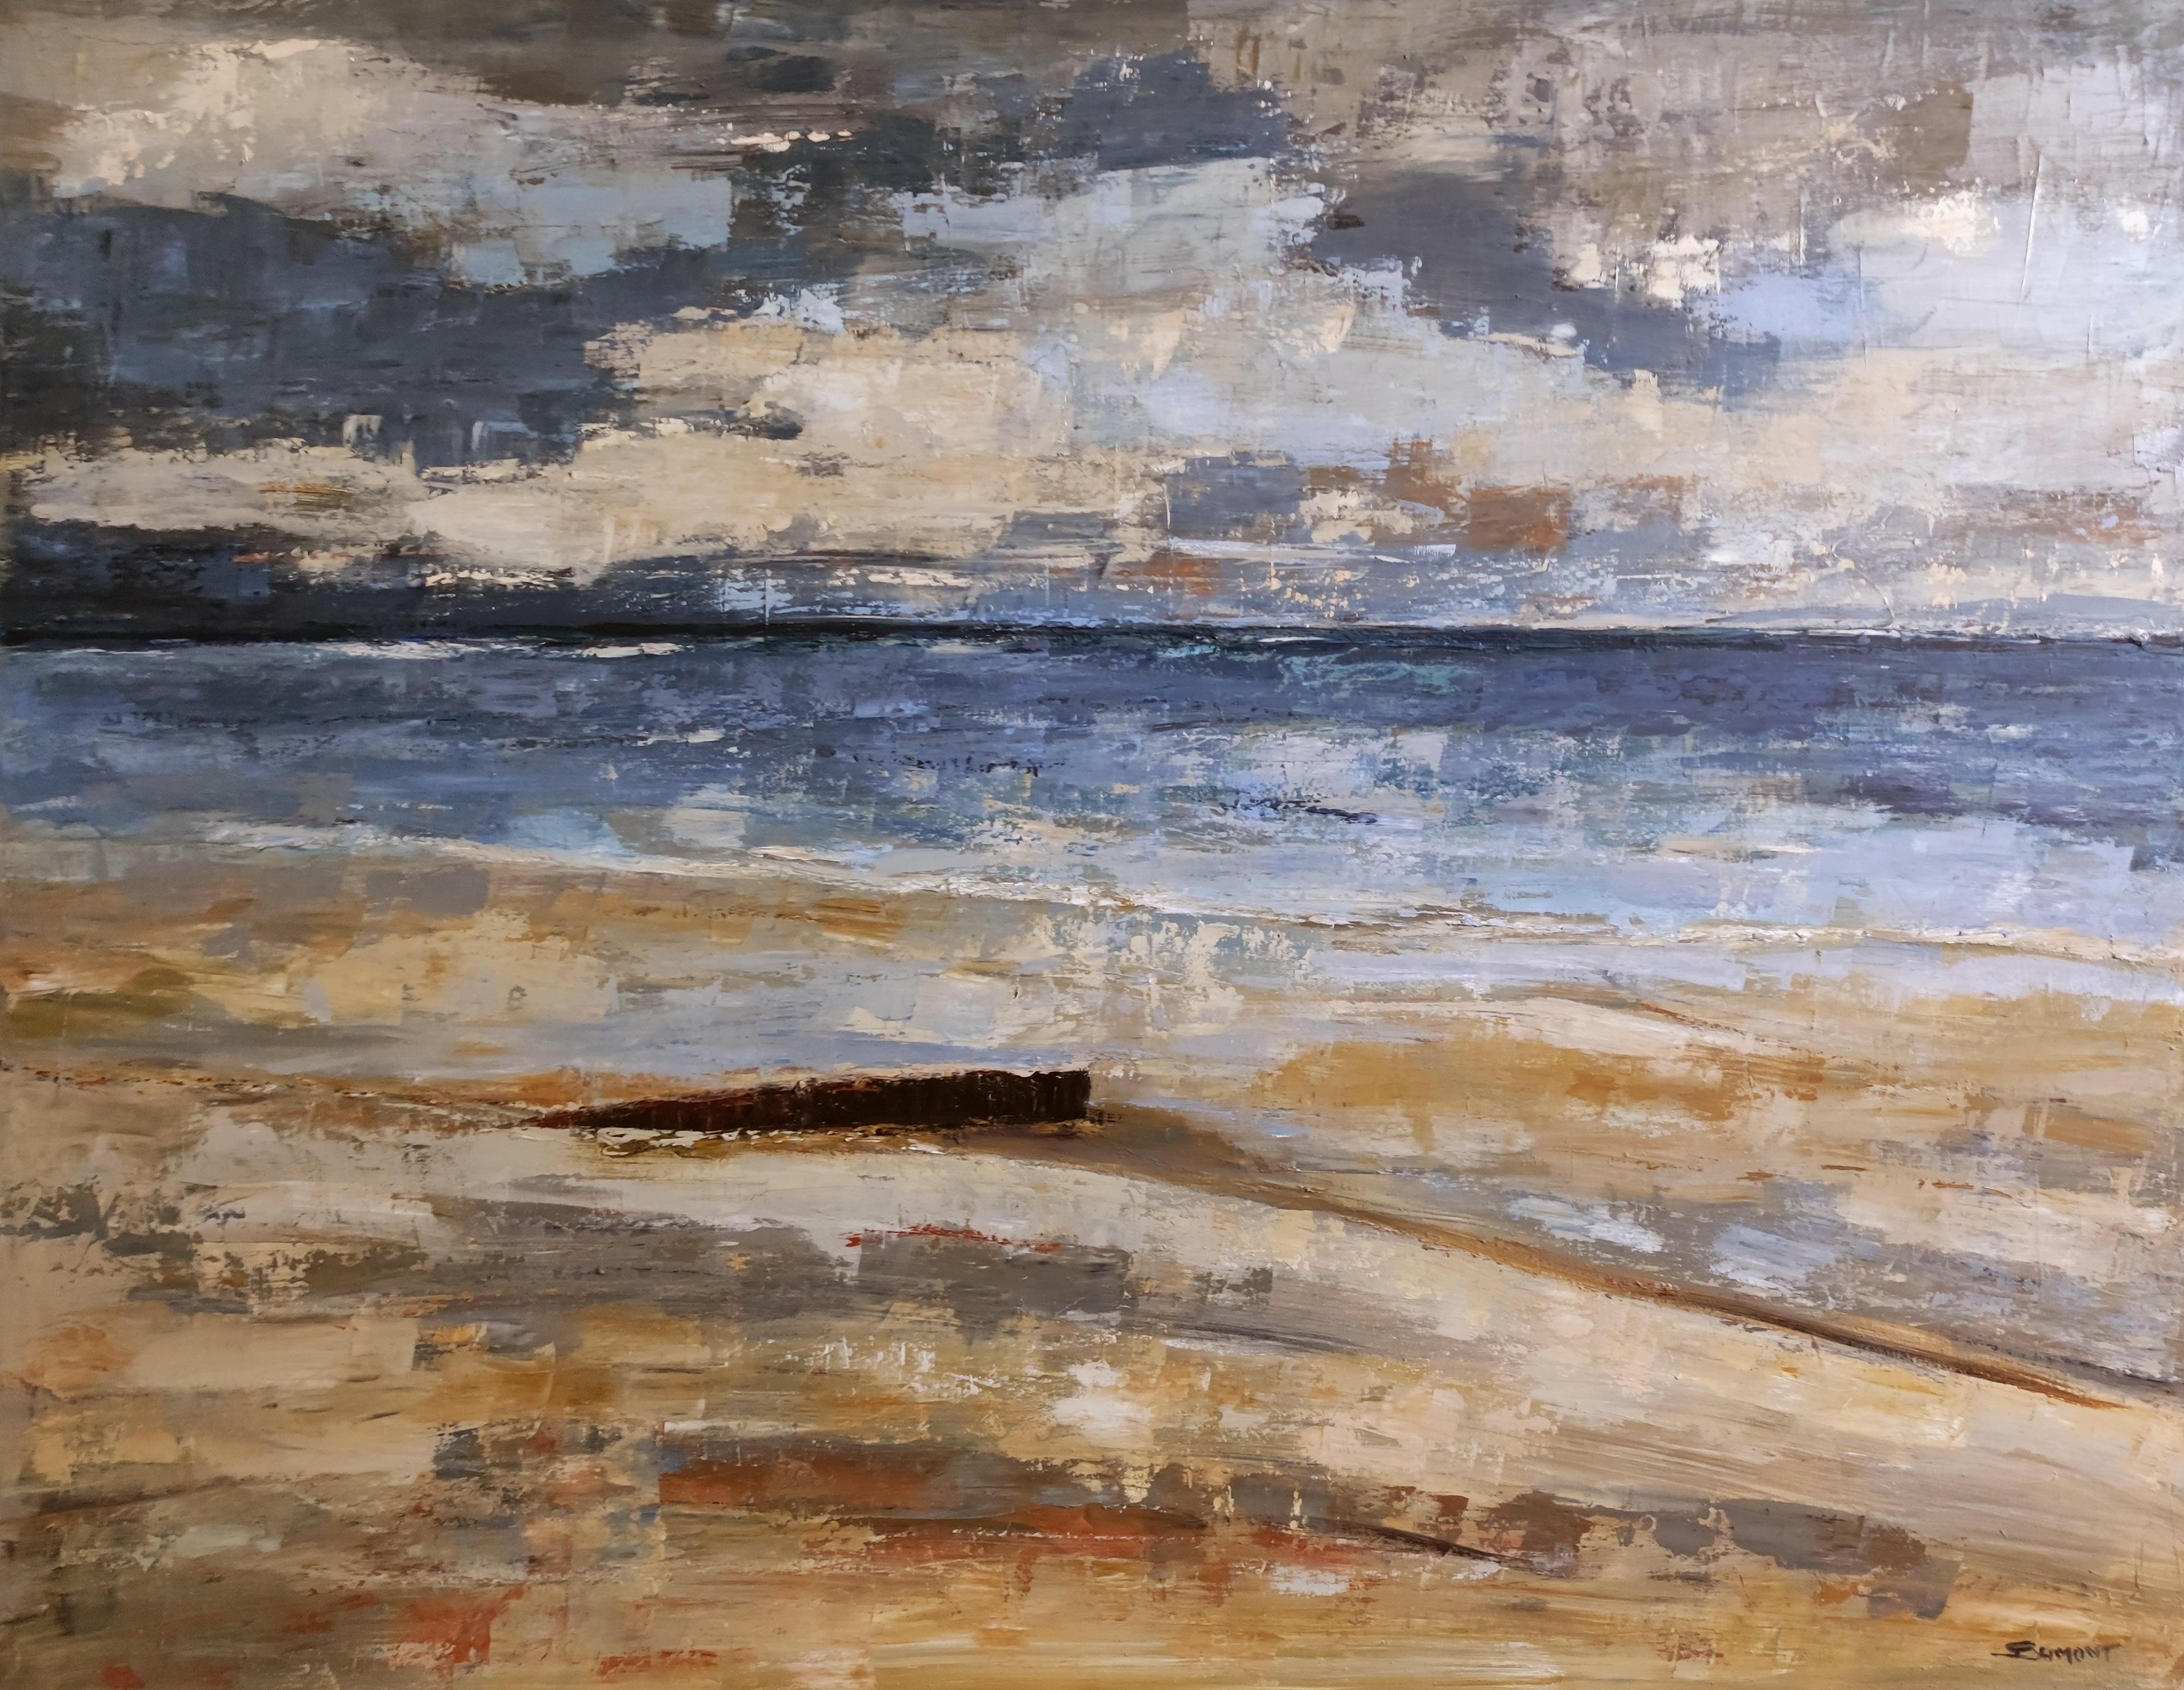 Abstract Painting SOPHIE DUMONT - Beach, bord de mer, semi-abstraite, huile sur toile, texture, empâtement, France